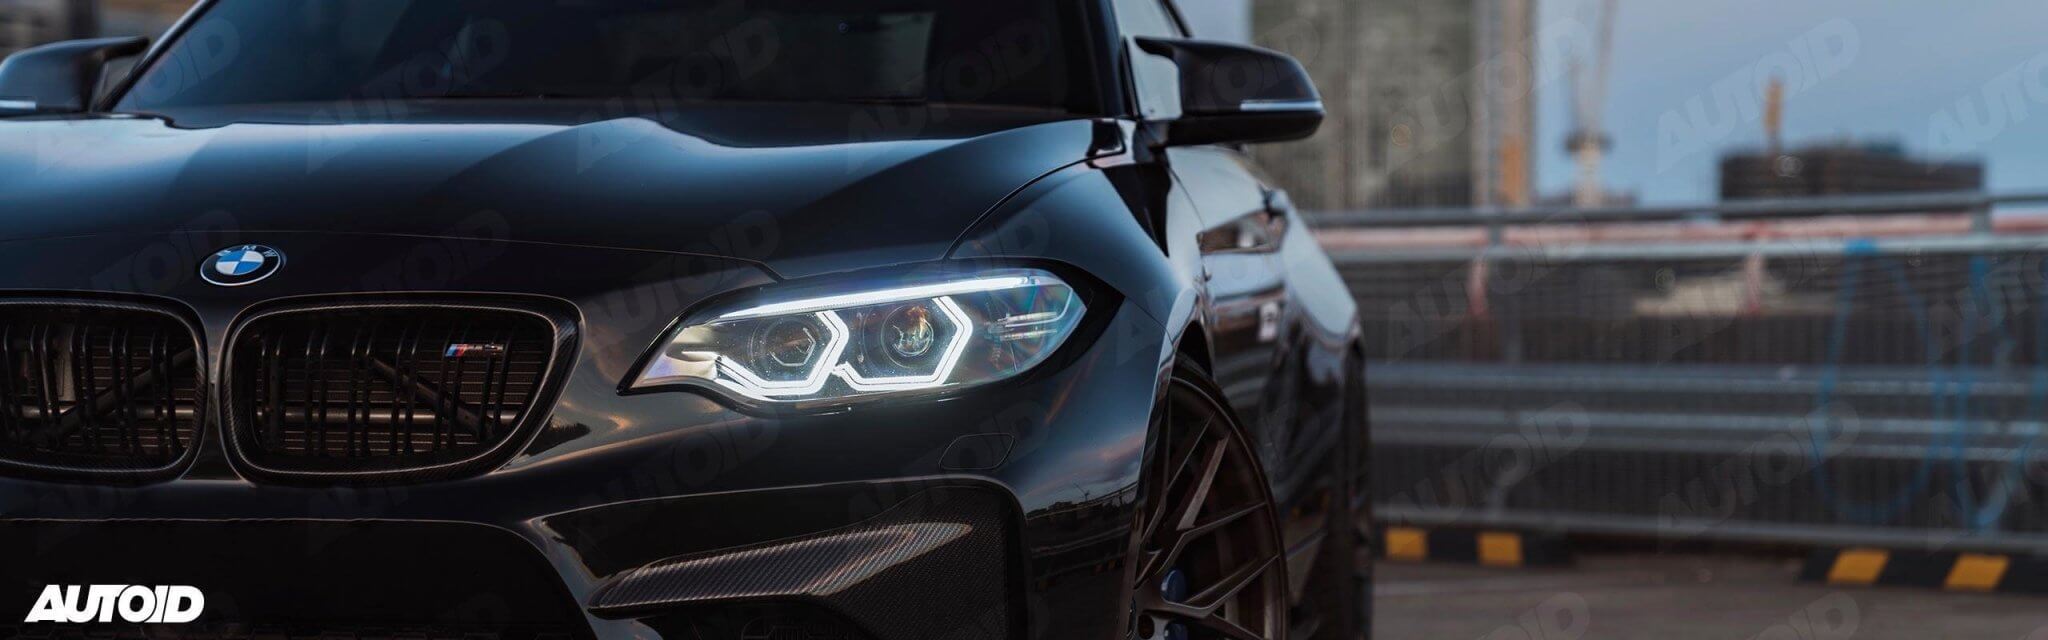 BMW | AUTOID